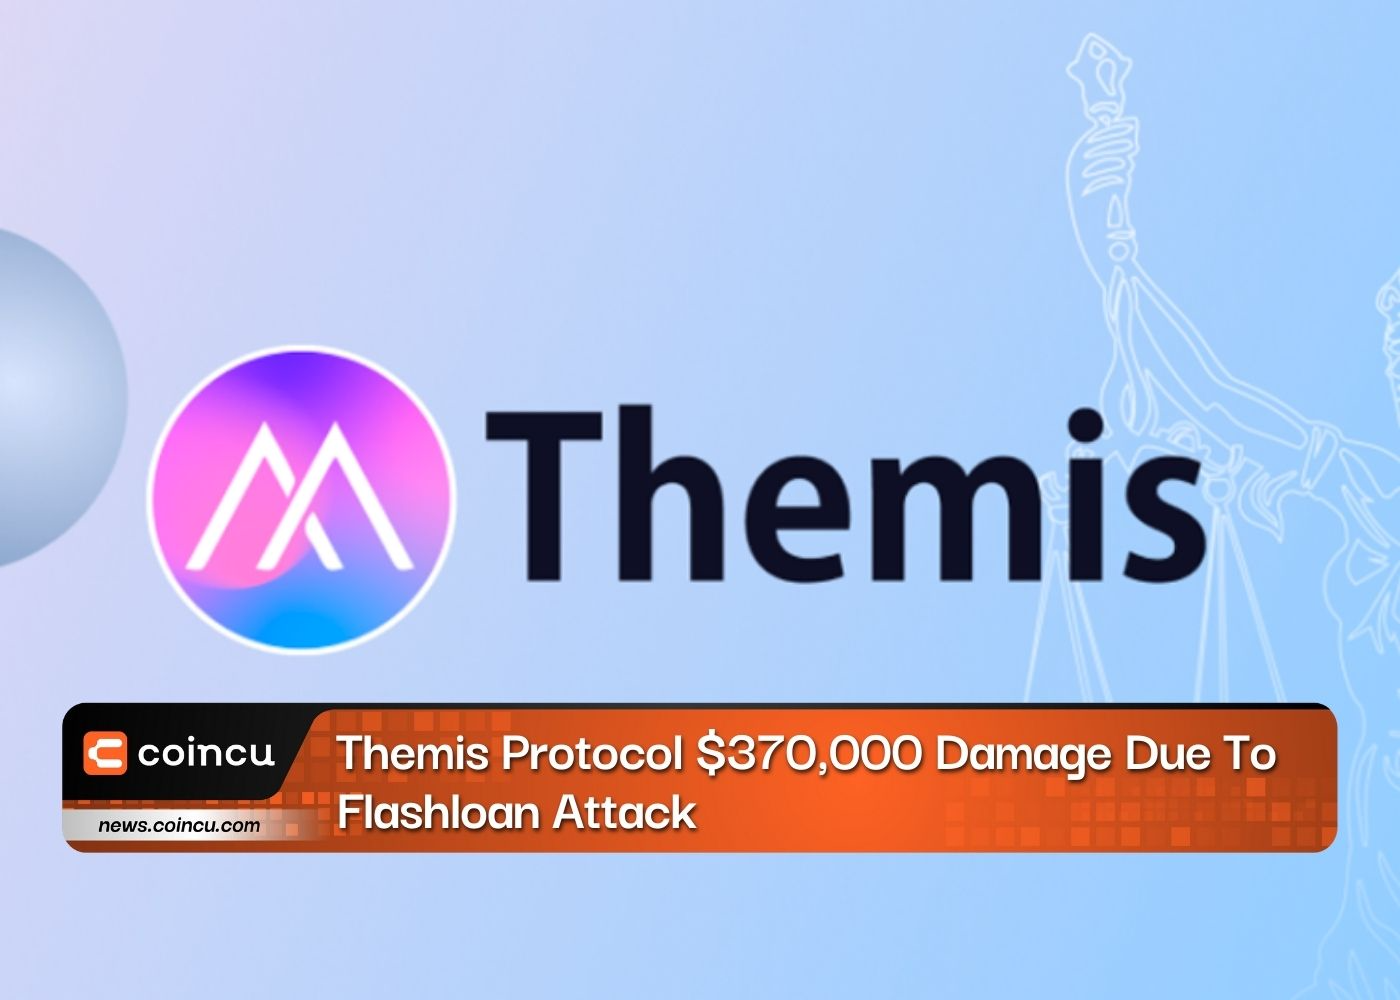 Protocole Themis 370,000 XNUMX $ de dommages dus à une attaque Flashloan